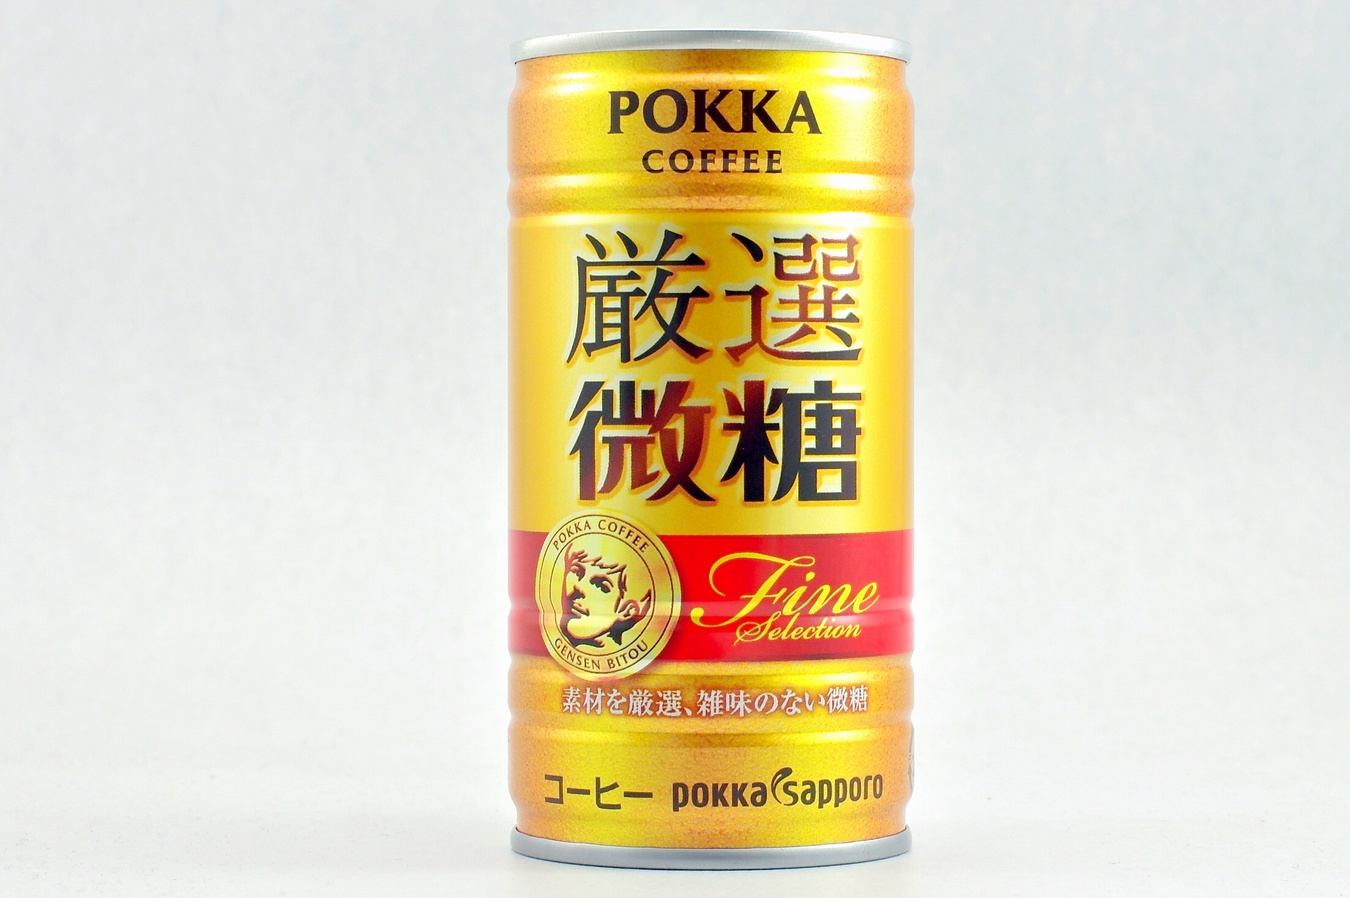 ポッカコーヒー 厳選微糖 2015年3月